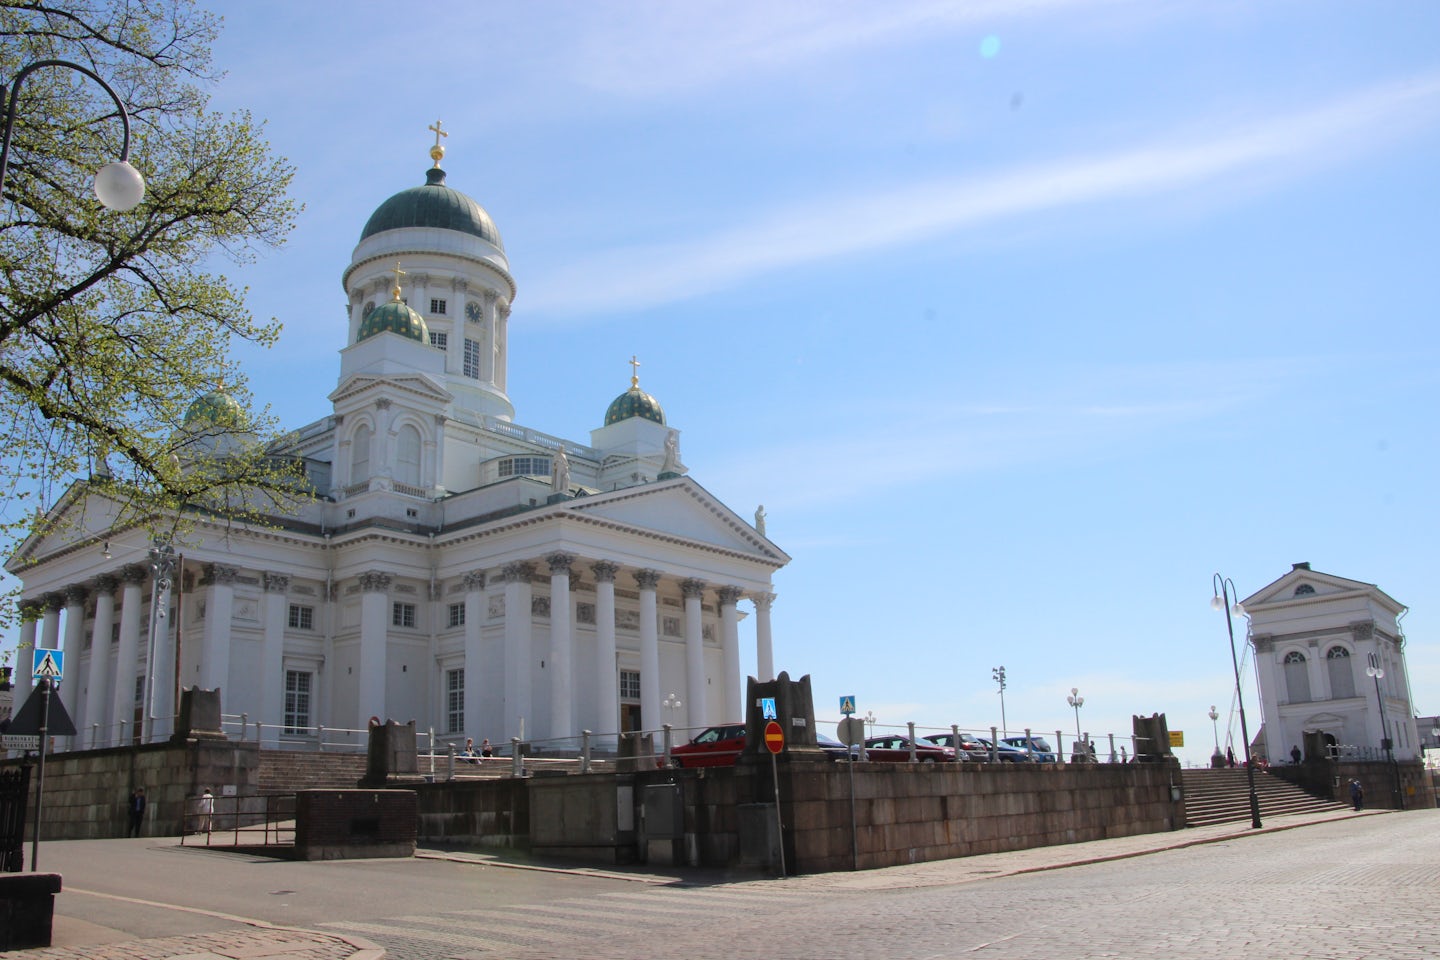 Tuomiokirkko 
Helsinki